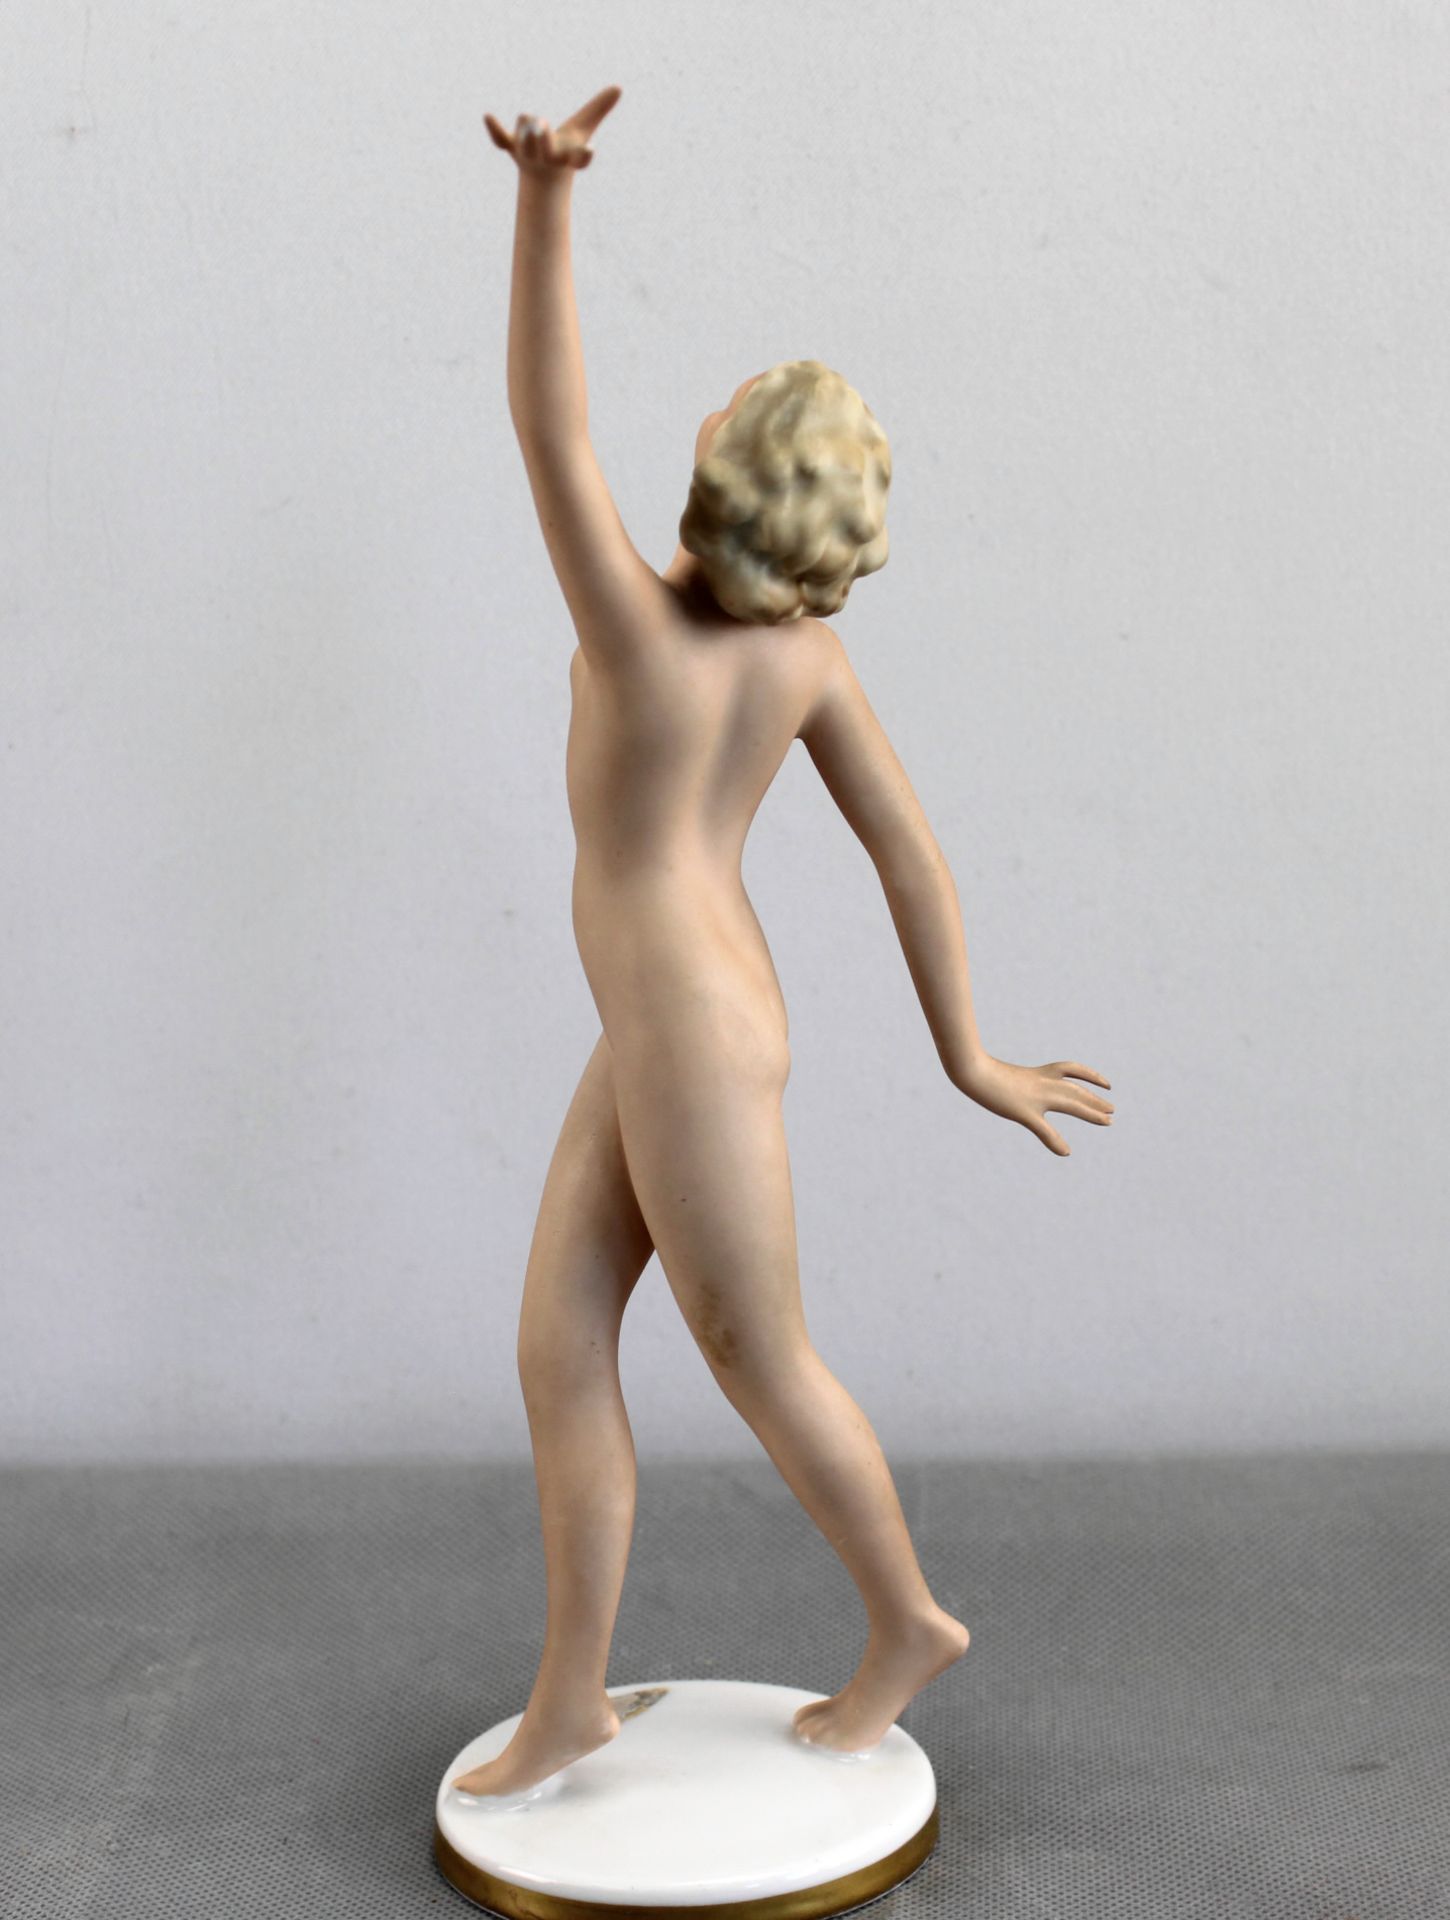 Porzellanfigur "Nackte Tänzerin" Gerold & Co.Tettau, Mod. 6340, nach 1949 - Bild 3 aus 4